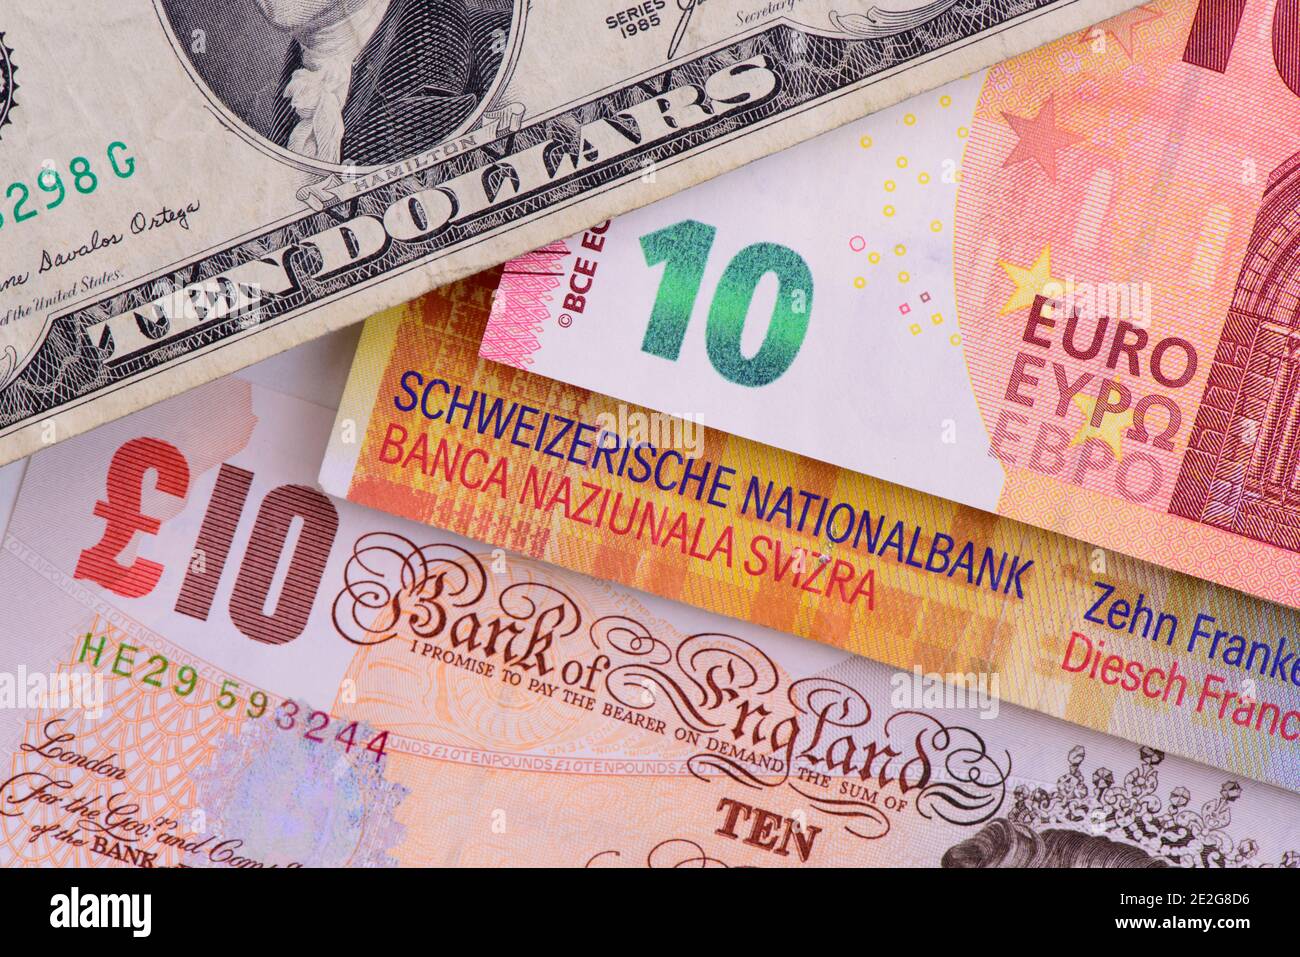 Verschiedene Währungen von Europa, England, USA und Schweiz Stock Photo